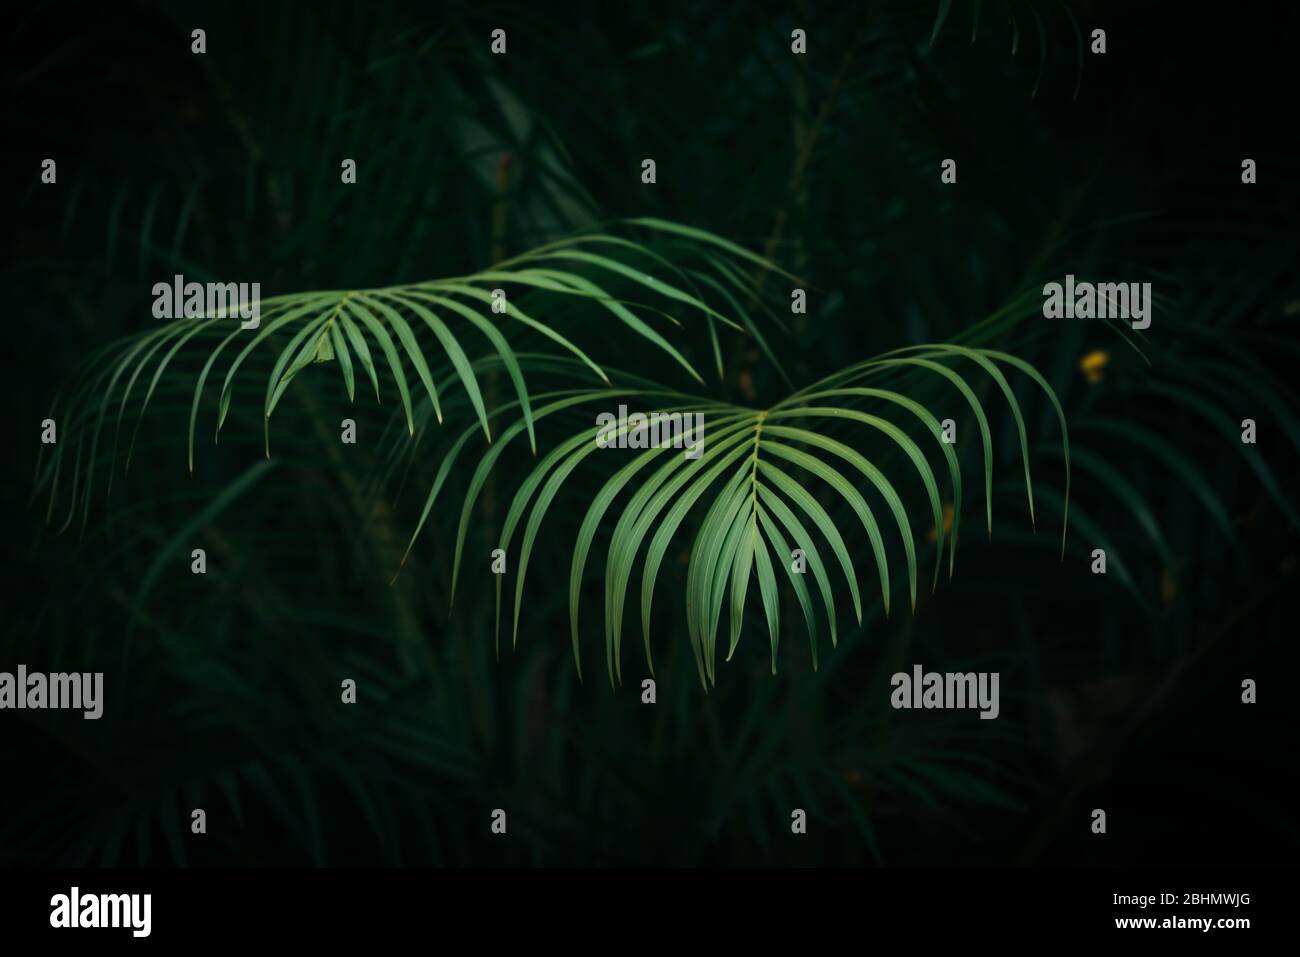 Feuilles de palmier vert vif avec fond de feuillage vert foncé Banque D'Images